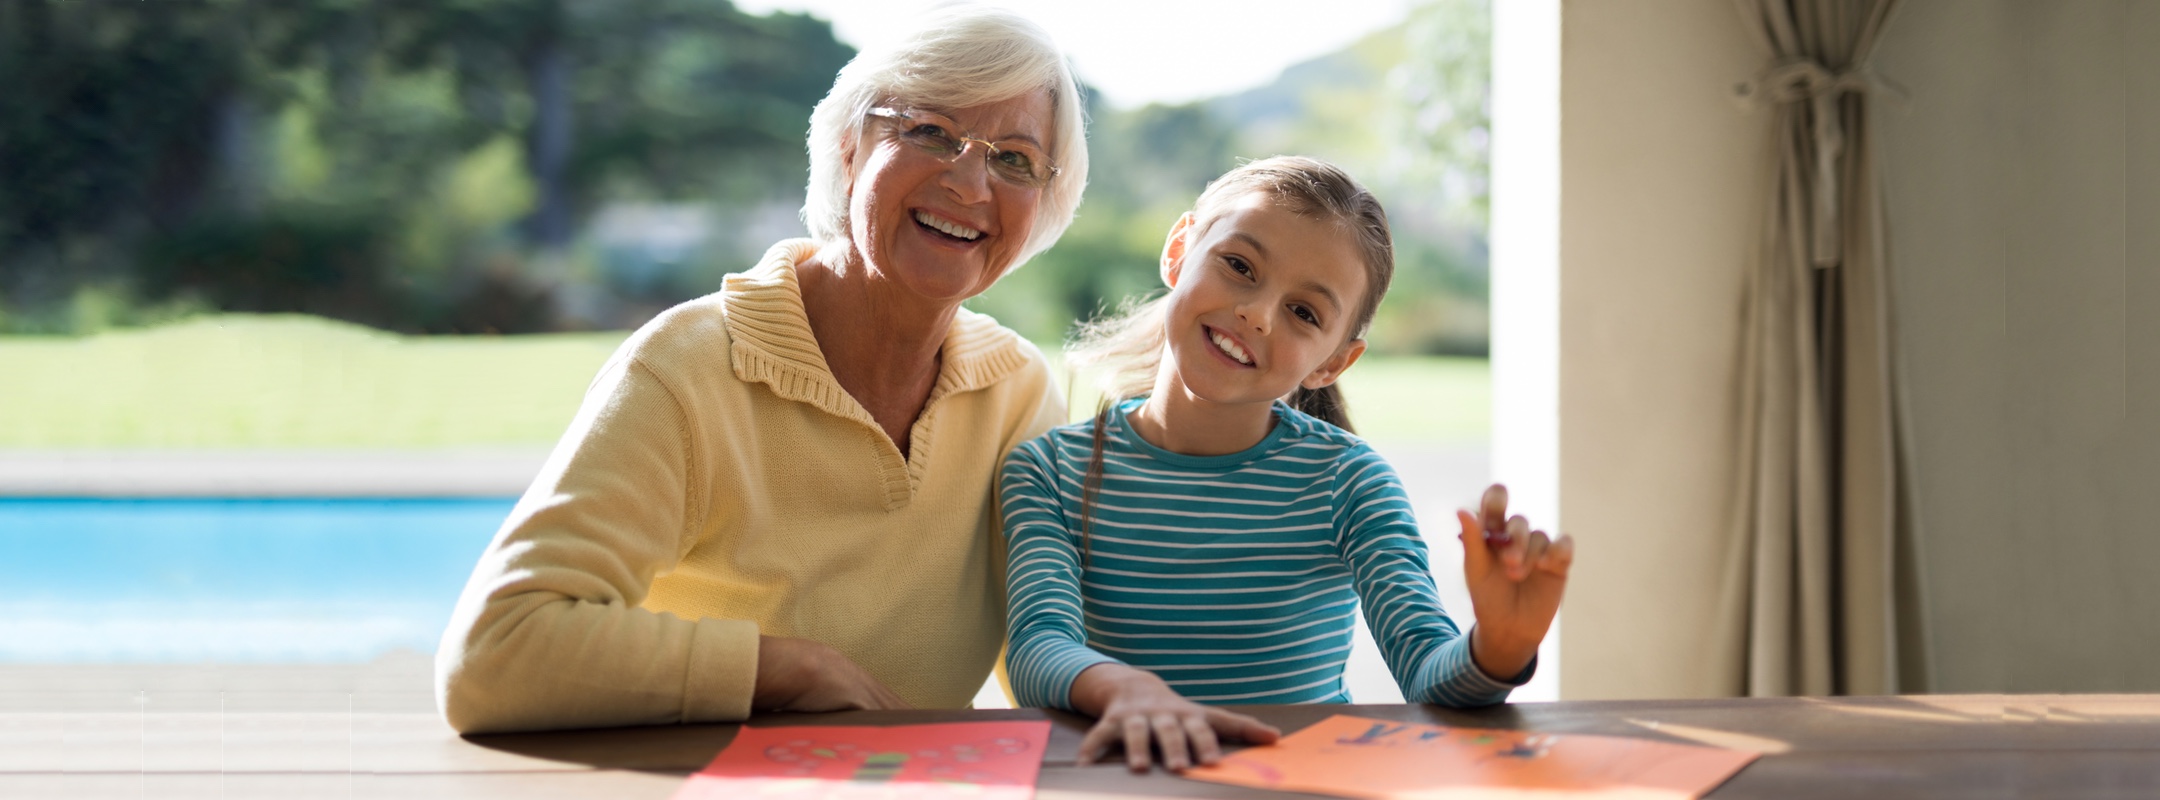 Senioren und Kinder generationenübergreifendes Zusammenleben